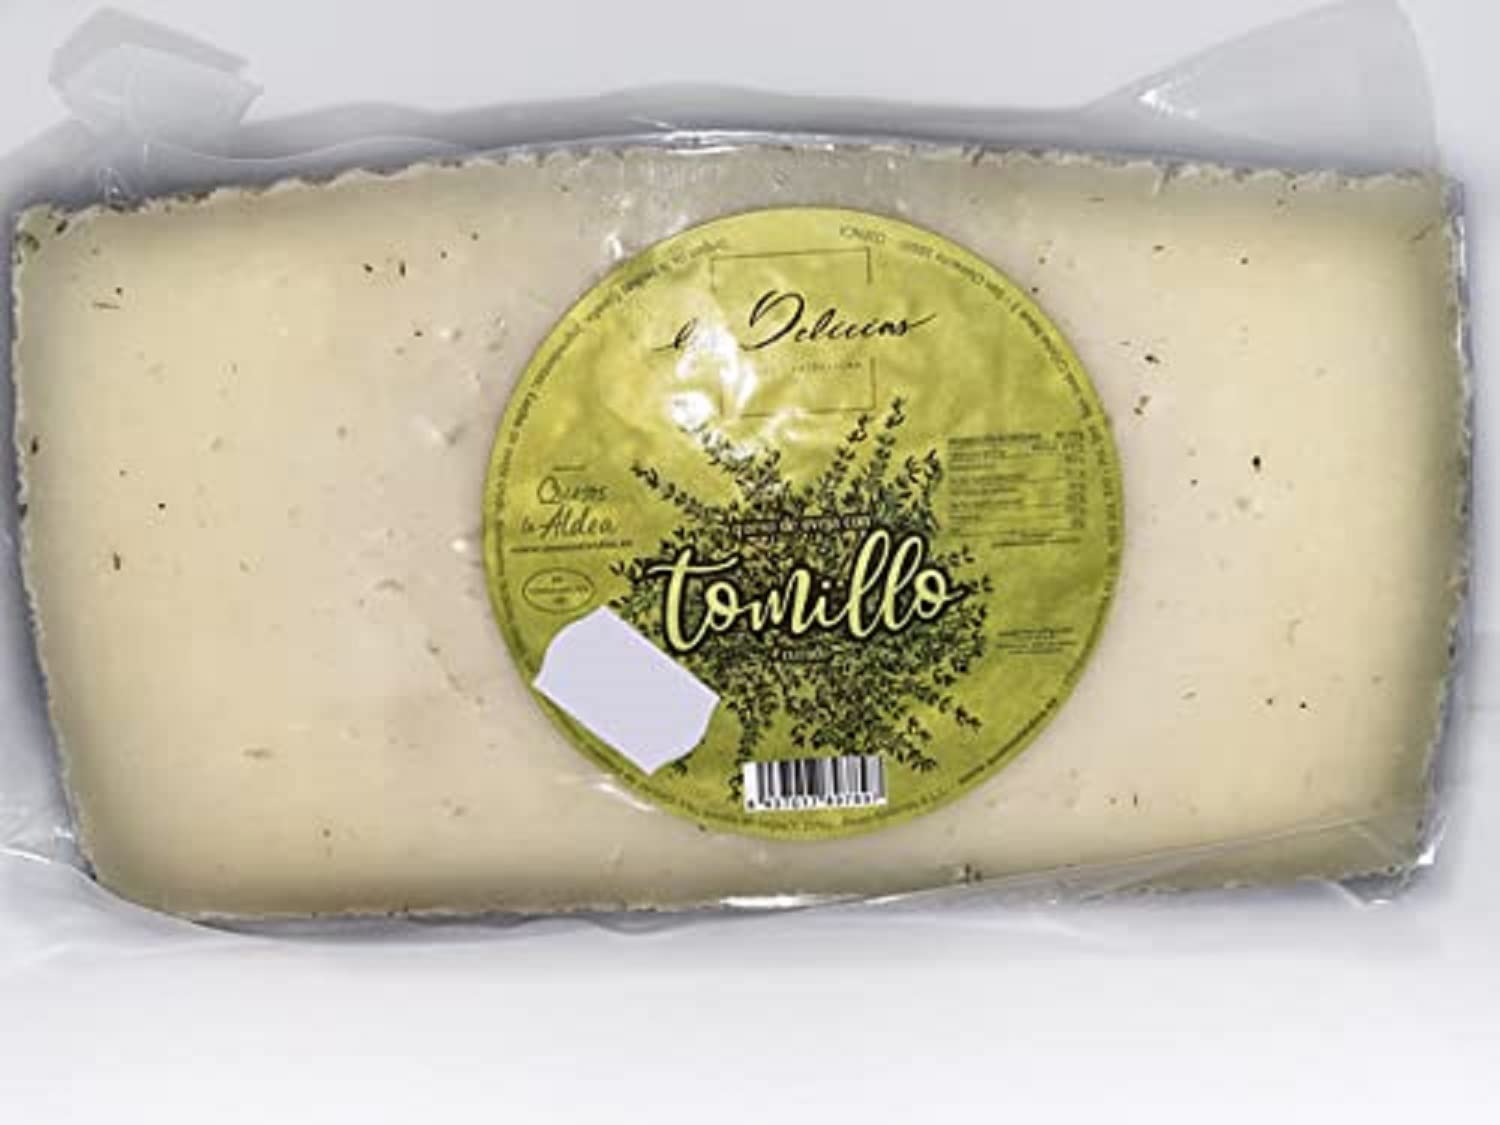 cheese Comestibles QUESOS LA ALDEA CALIDAD ARTESANAL spanish cheese teruel today Vinos tintos